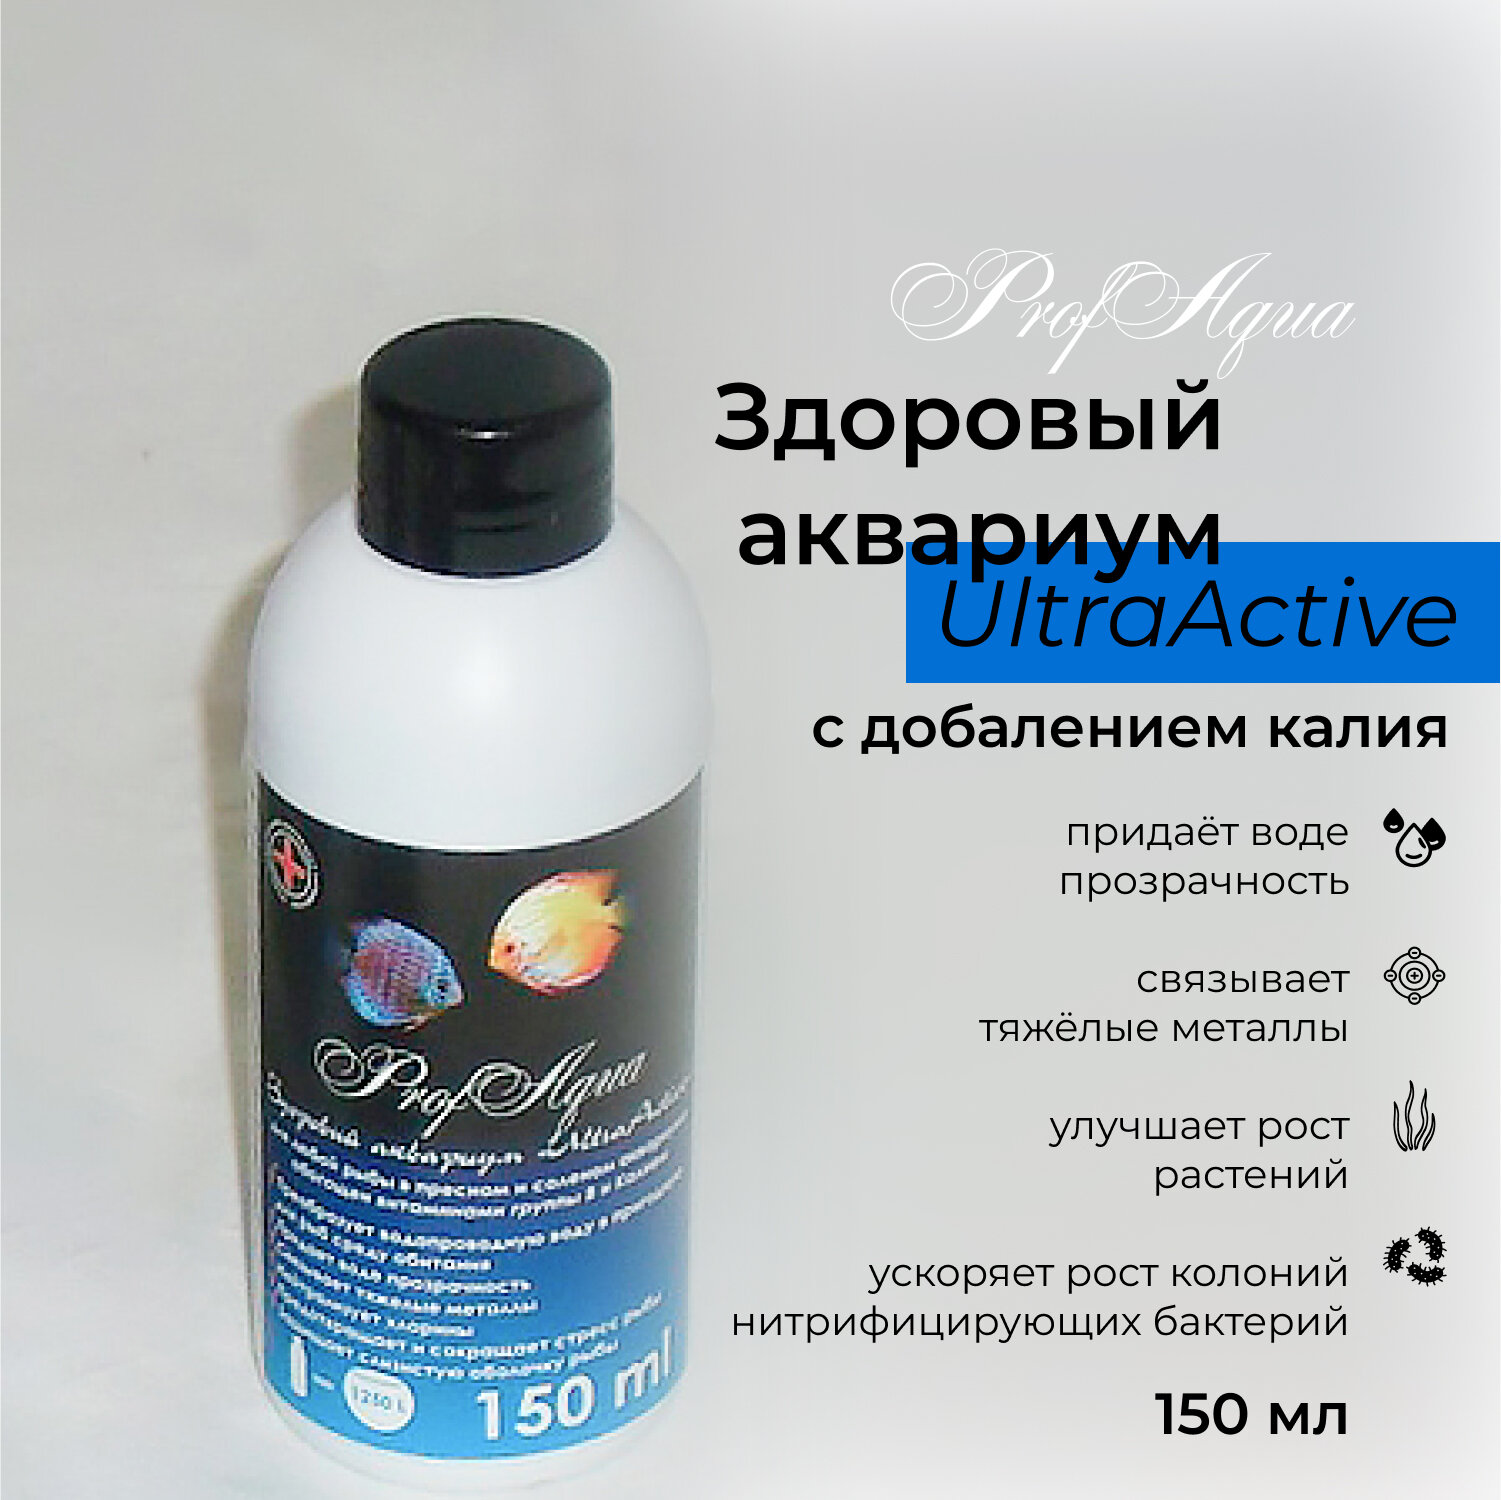 Кондиционер-удобрение для аквариума ProfAqua "Здоровый аквариум UltraActive" 150 мл, с витаминами группы В и калием